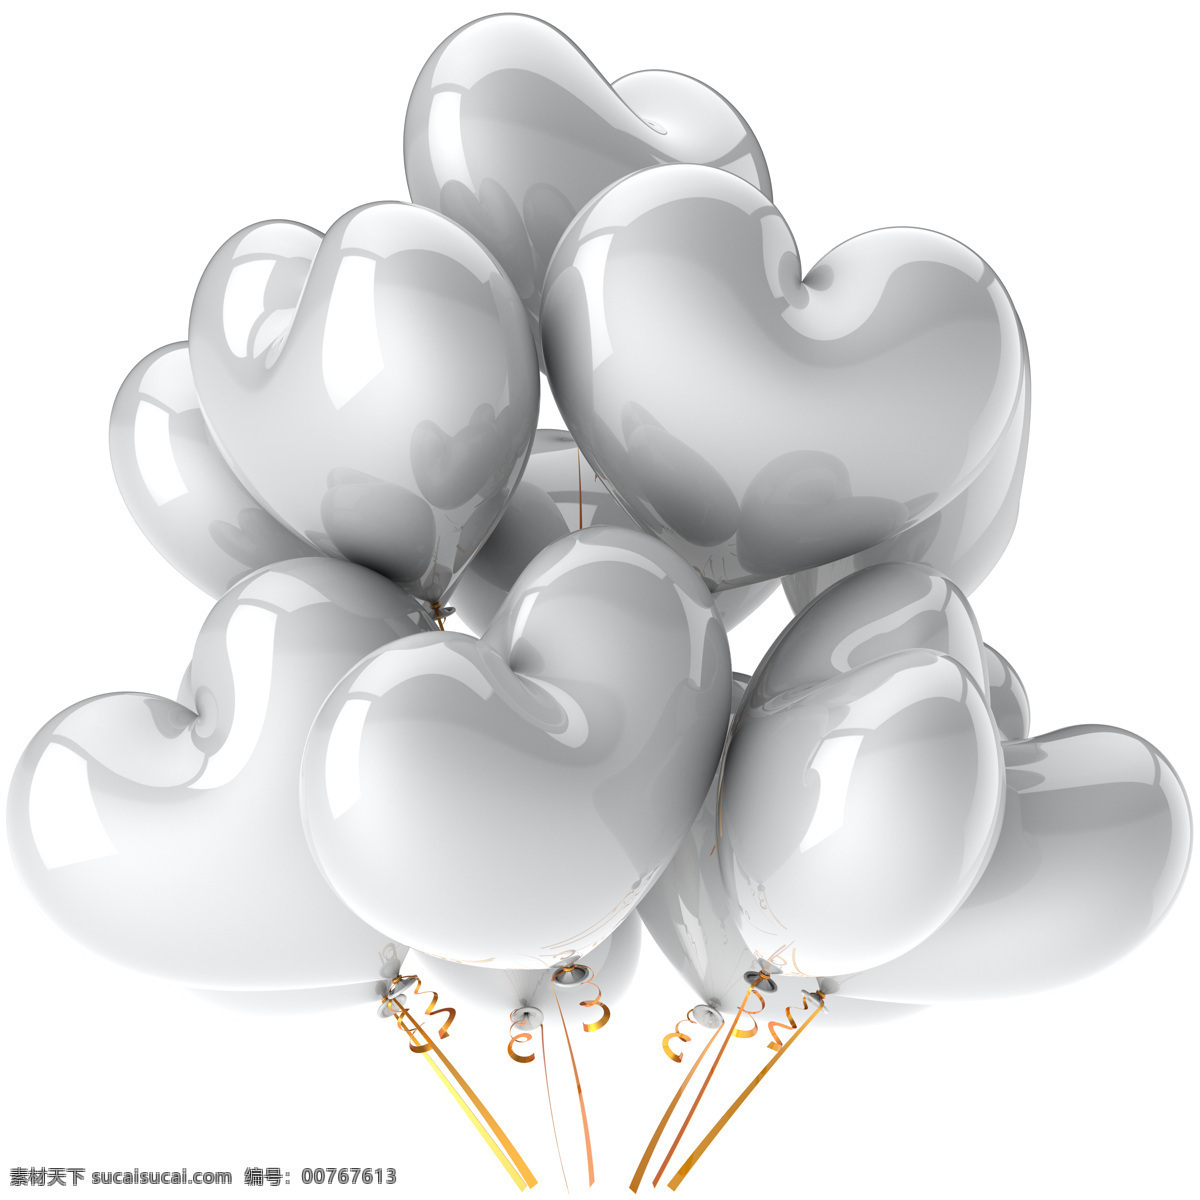 灰色 气球 背景 气球背景 立体背景 情人节 节日素材 浪漫节日 底纹背景 其他类别 生活百科 白色